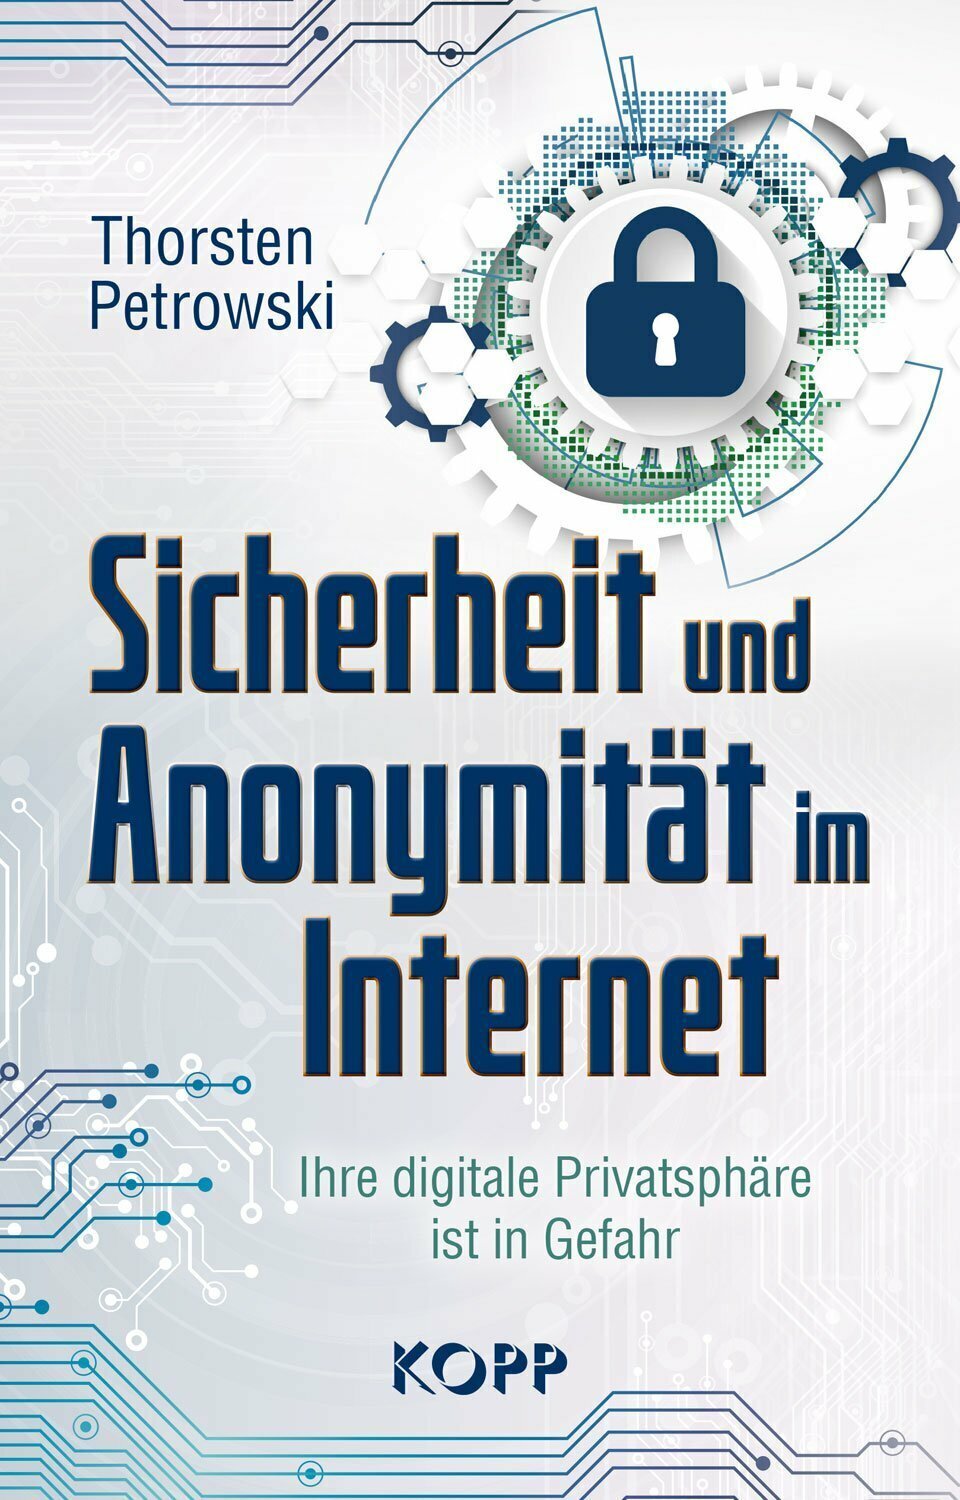 Sicherheit und Anonymität im Internet - Anonym surfen - das wünschen sich deshalb in Zeiten staatlicher Überwachung und kommerzieller Datenhändler viele Nutzer des Internets.